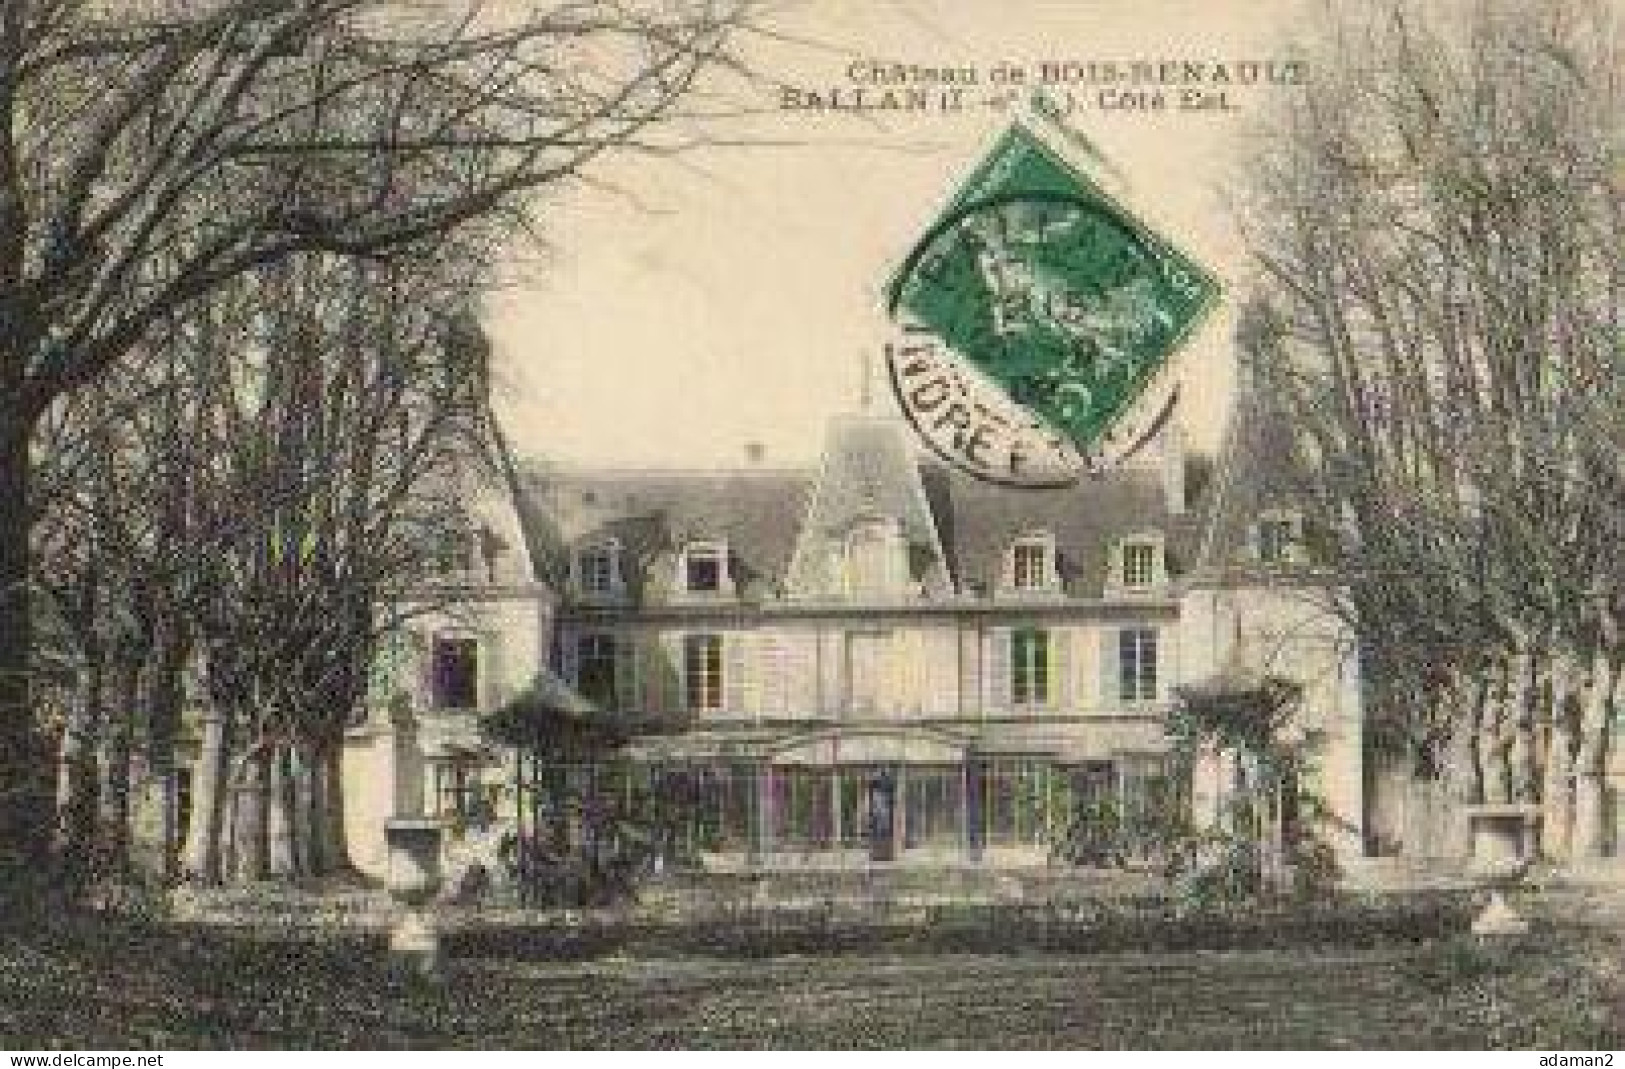 BALLAN.Chateau De Bois Renault - Ballan-Miré